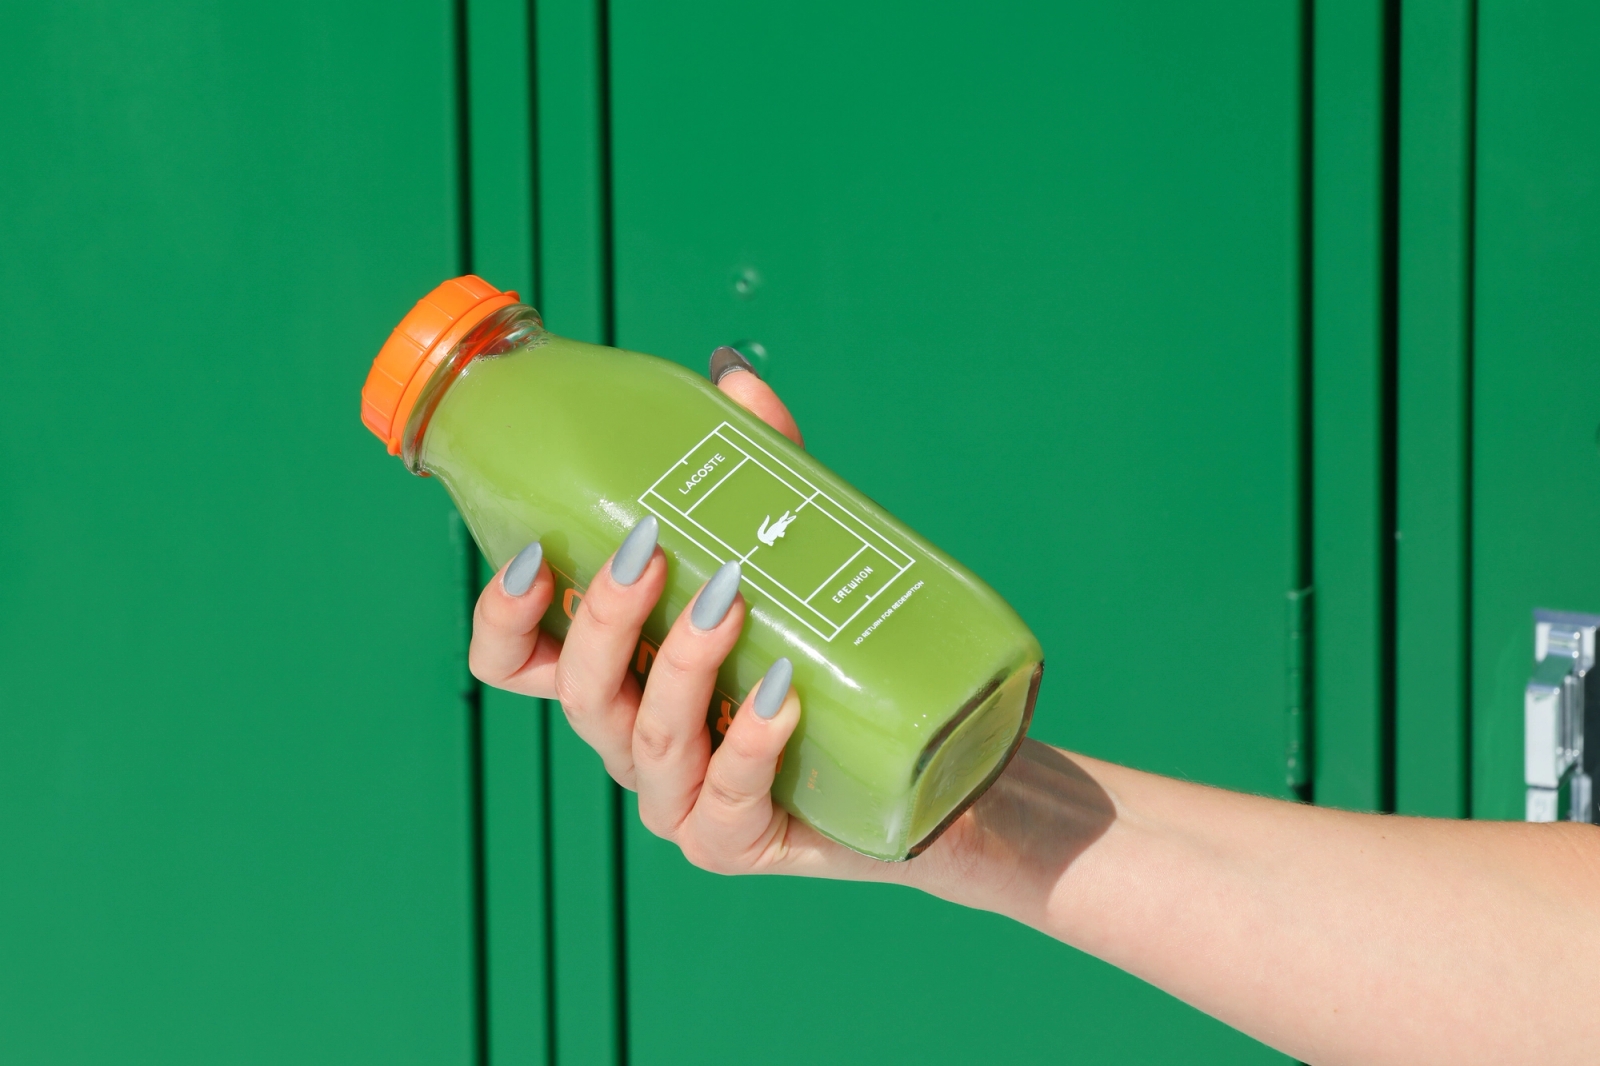 Erewhon Lacoste custom juice bottle, nails, green locker